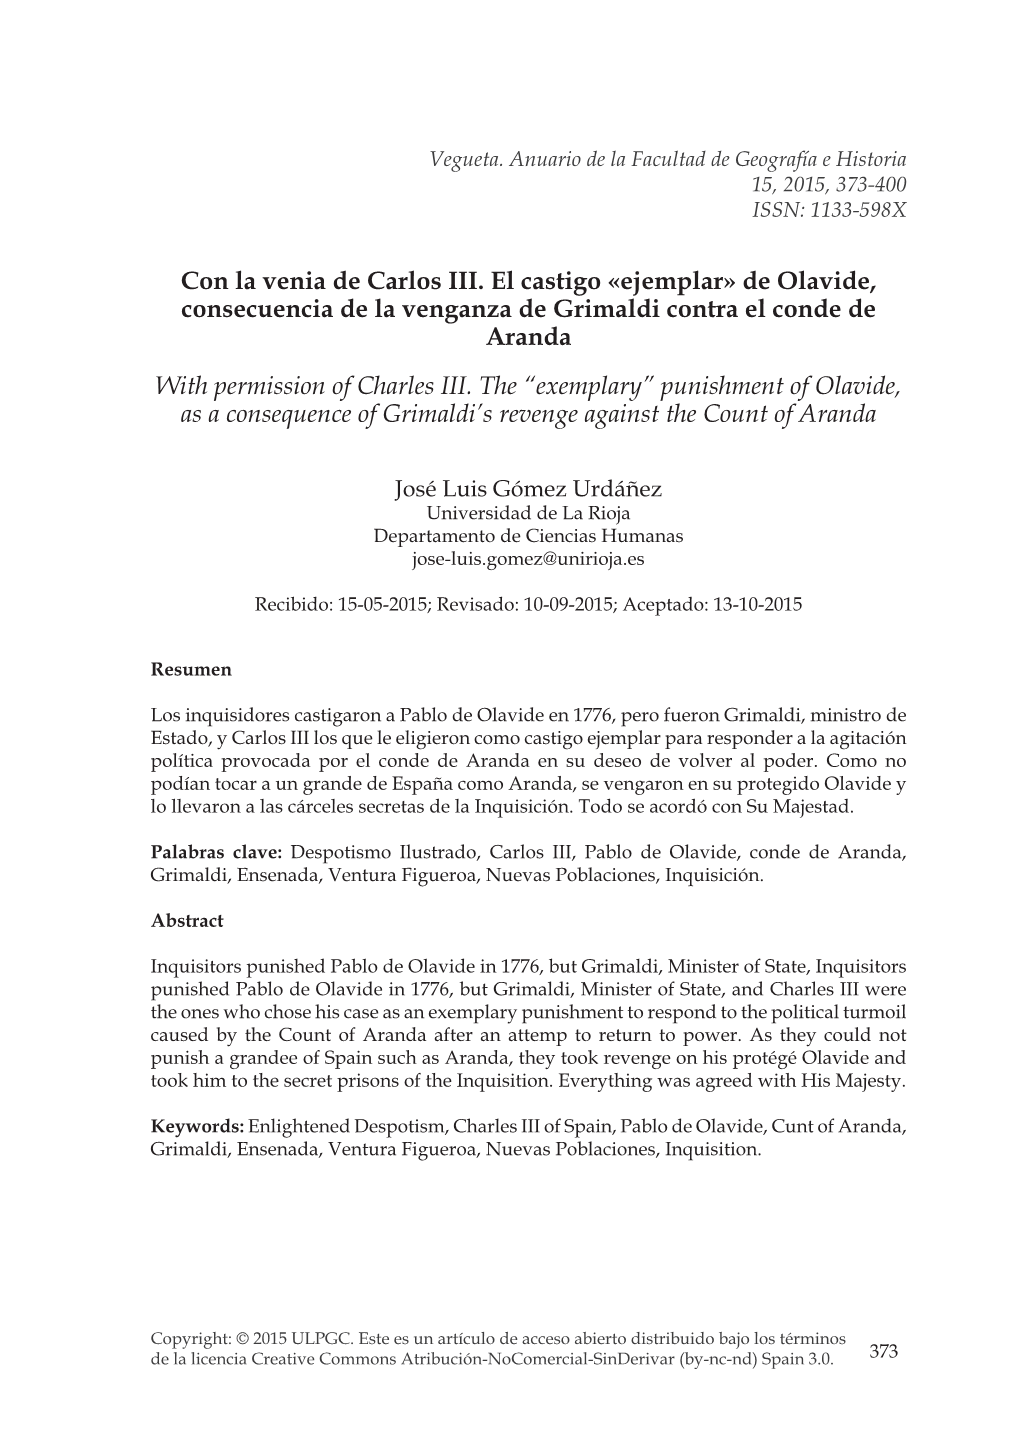 Con La Venia De Carlos III. El Castigo "Ejemplar" De Olavide